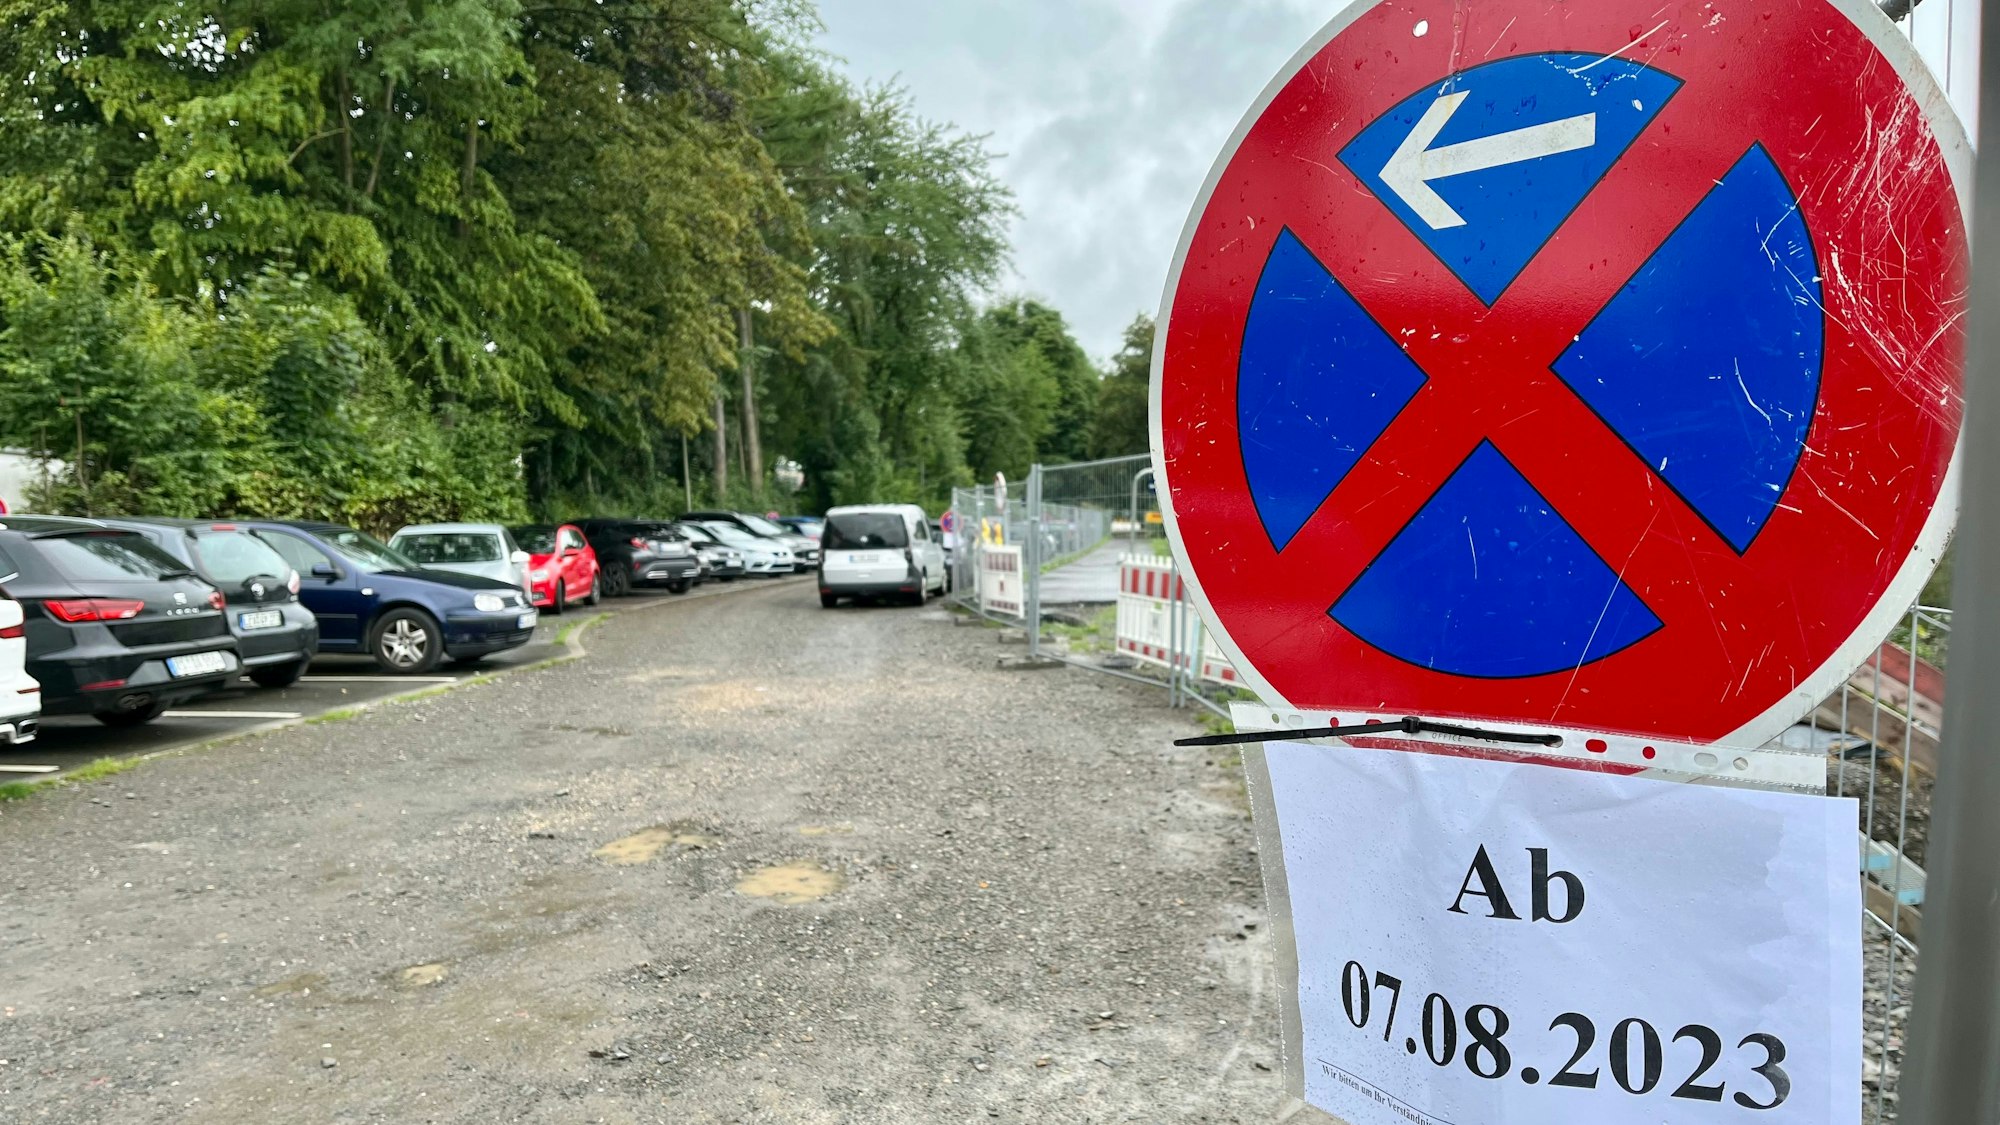 Der große und meist volle Schotter-Parkplatz zwischen Montanusstraße und Balkantrasse wird ab dem 7. August gesperrt.